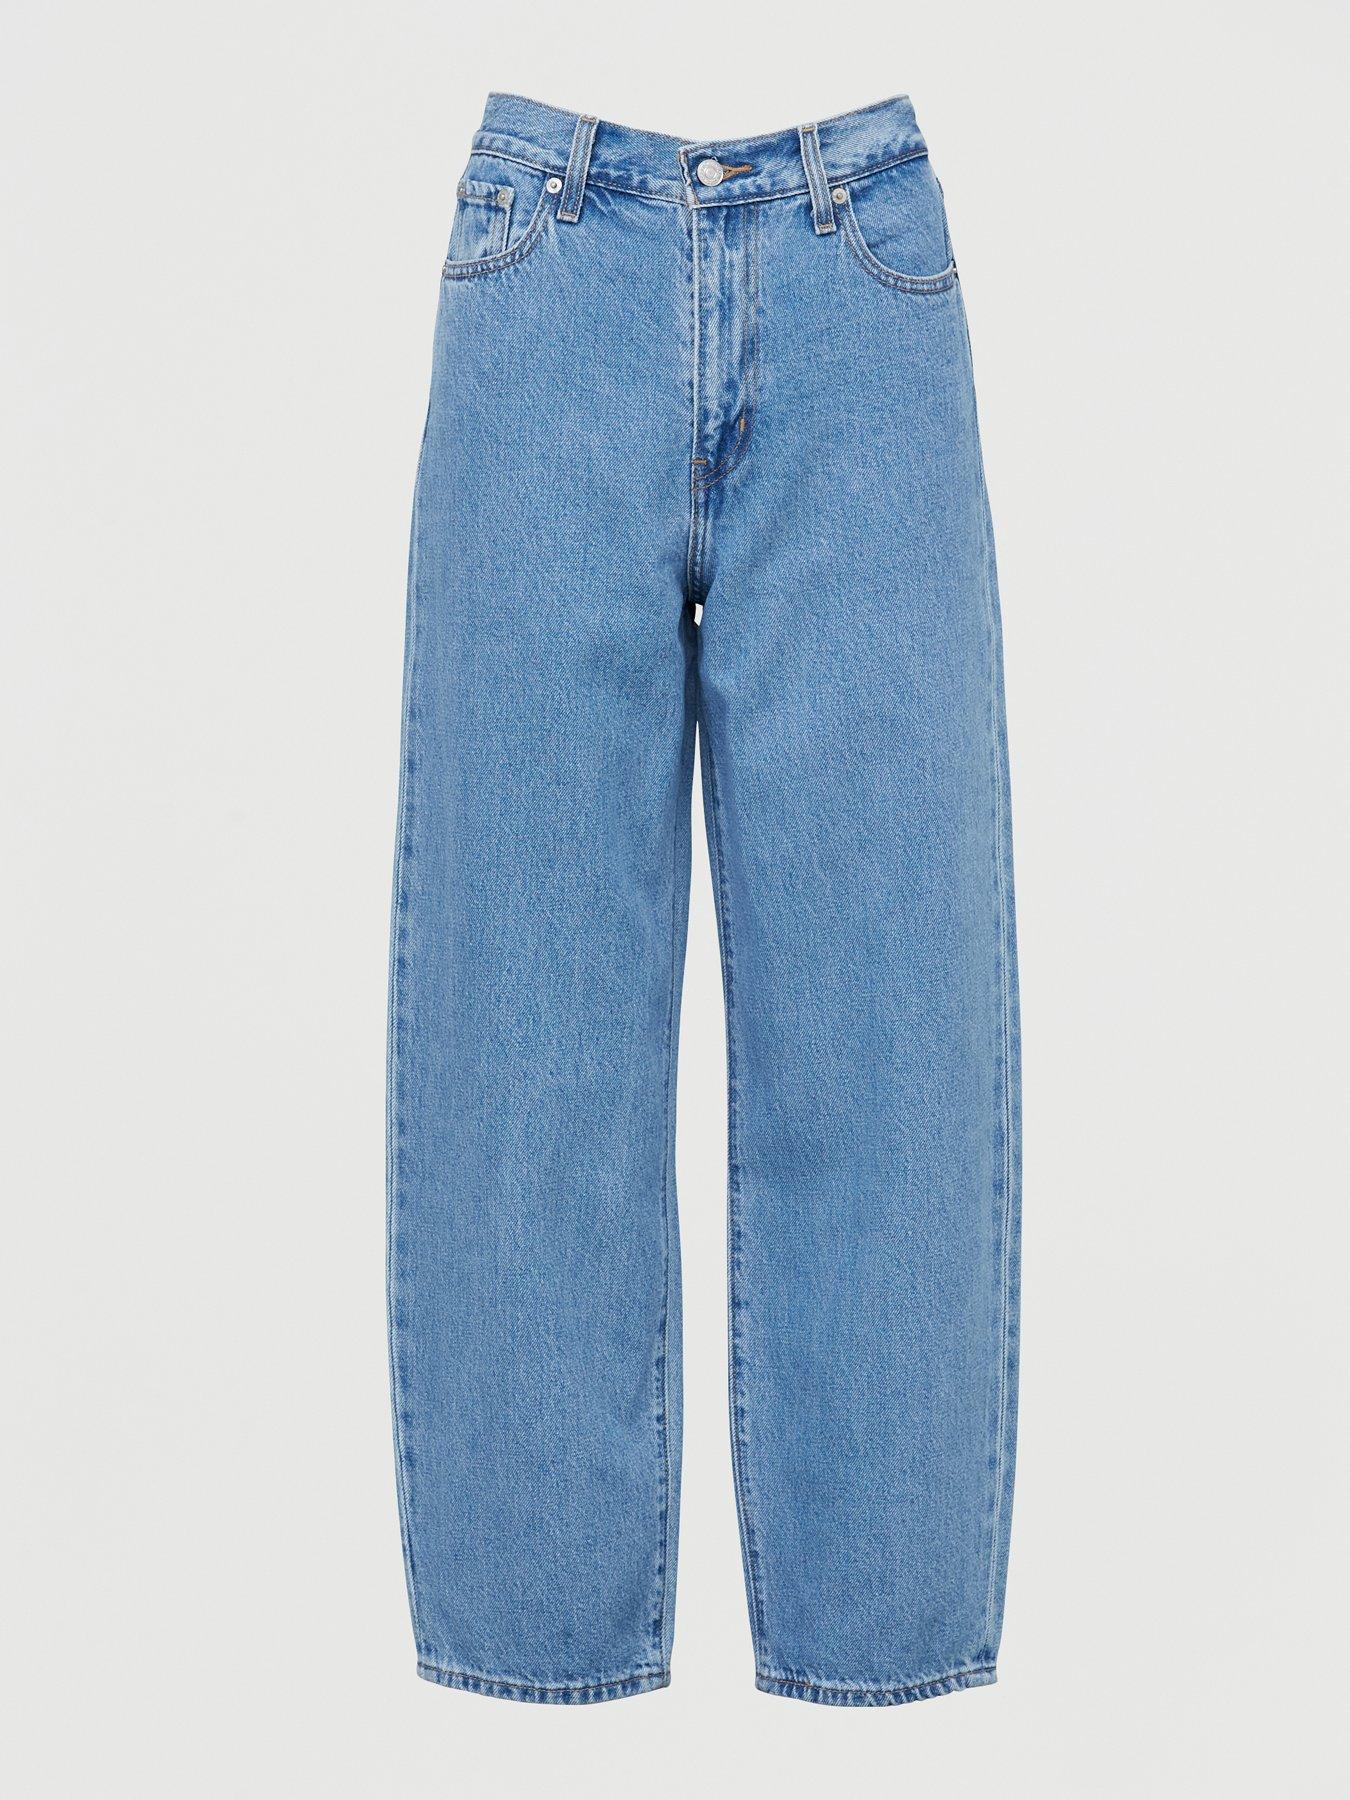 levis 317 jeans